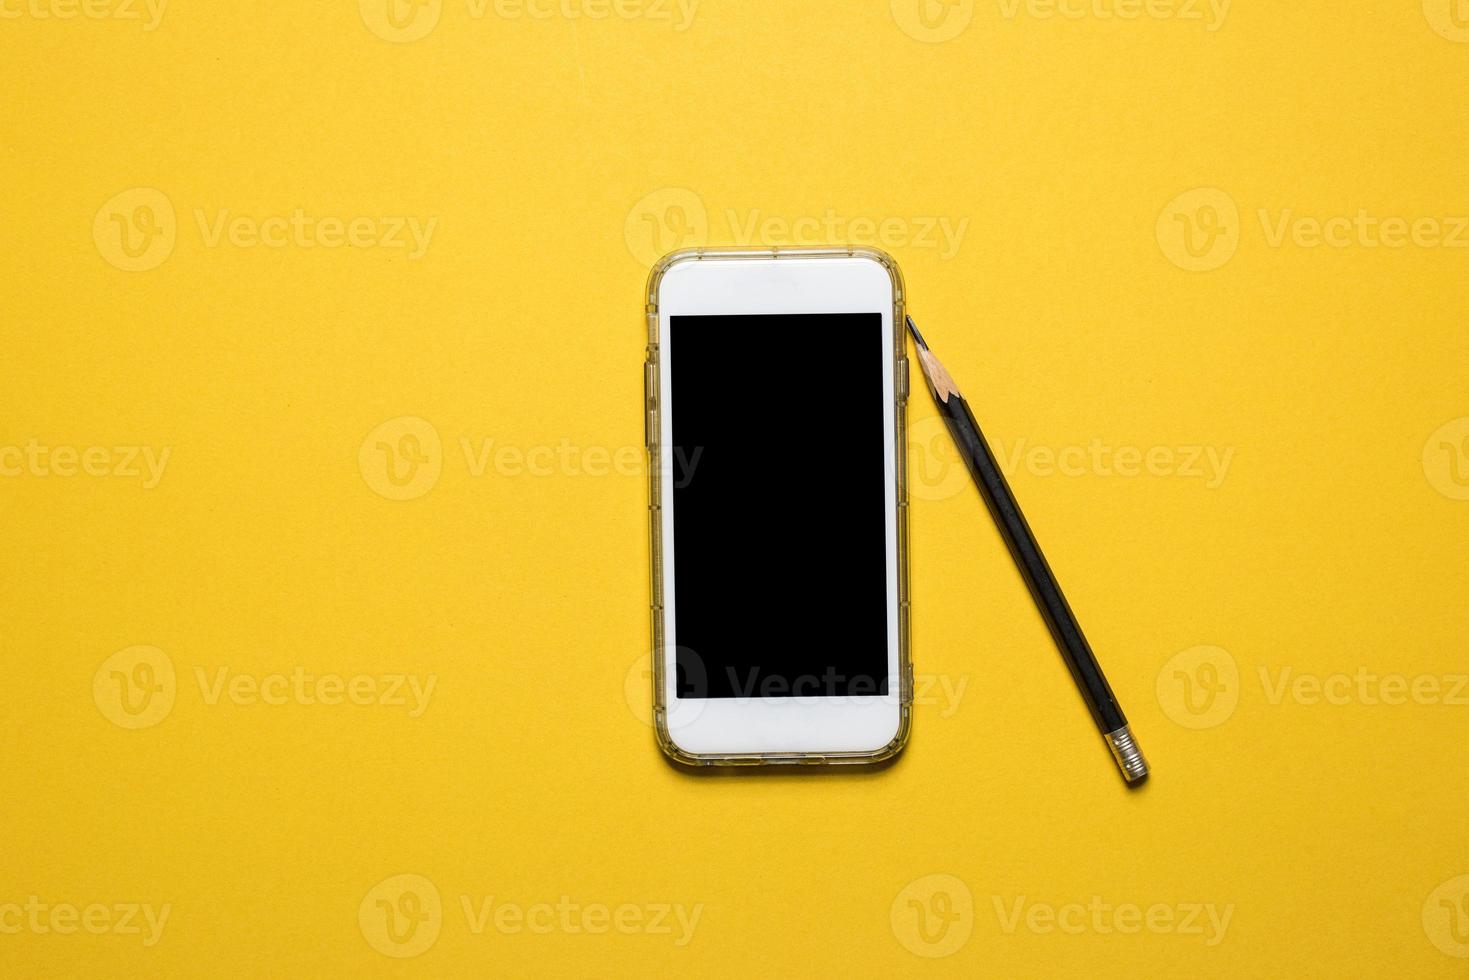 telefoons, communicatieapparaten geplaatst op een geel achtergrondtechnologieconcept met kopieerruimte foto